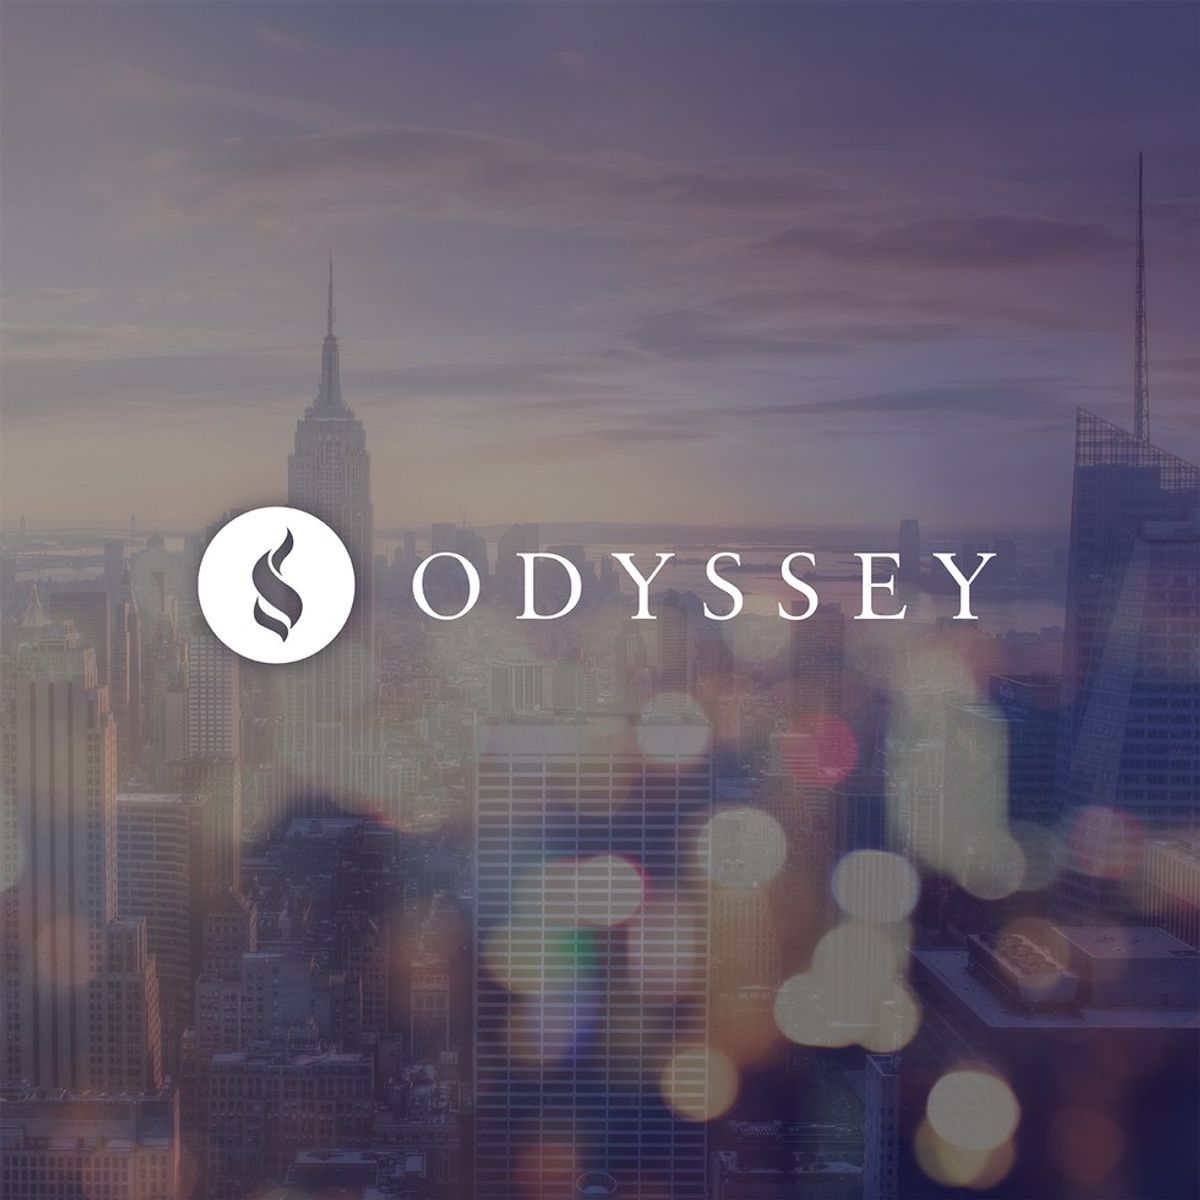 My Goodbye To Odyssey